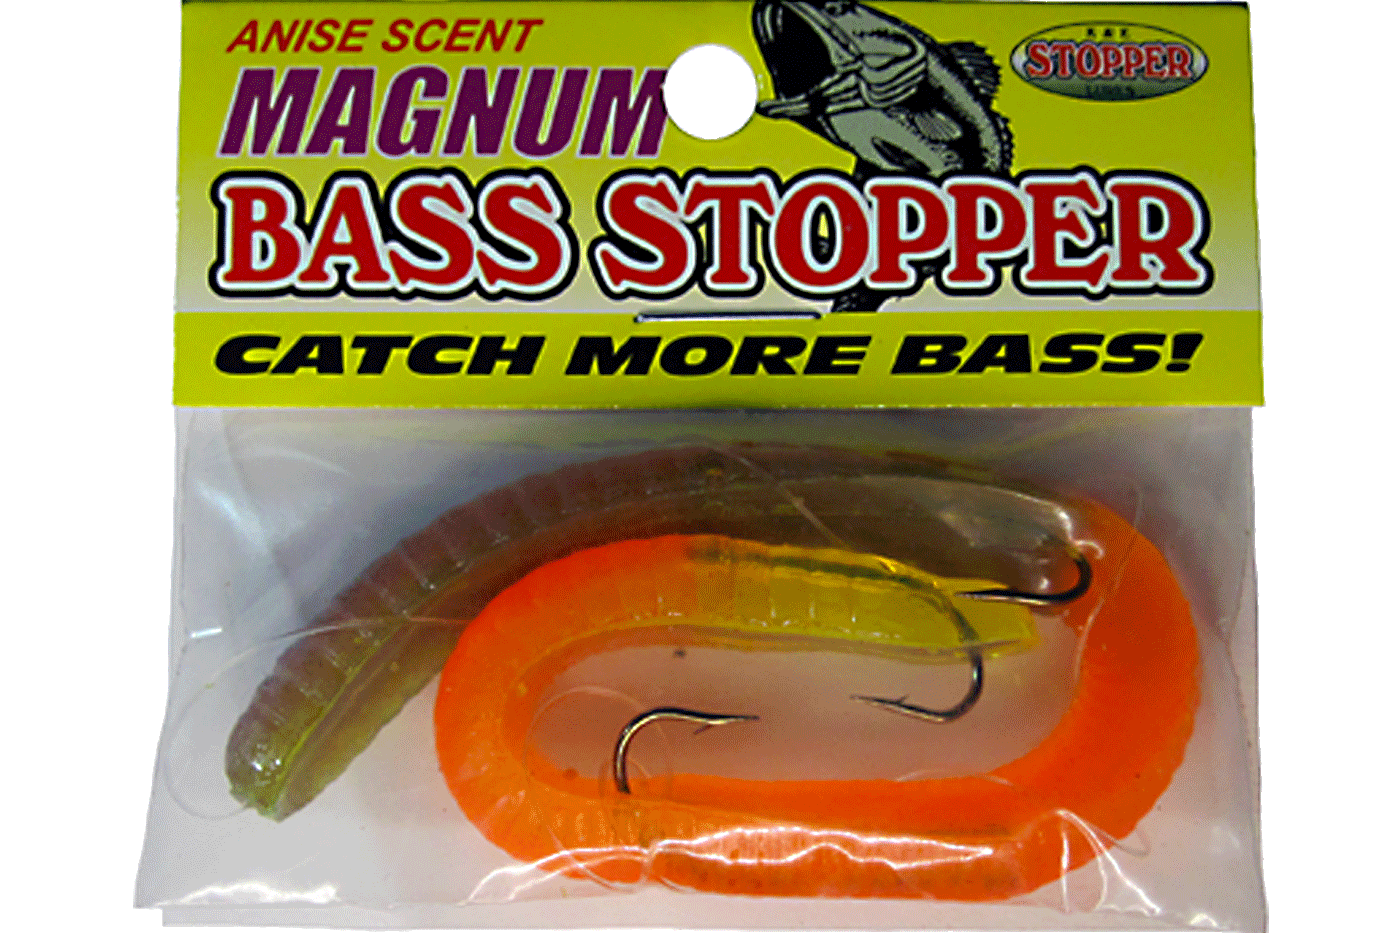 Magnum Bass Stopper 3-hook worm 1400